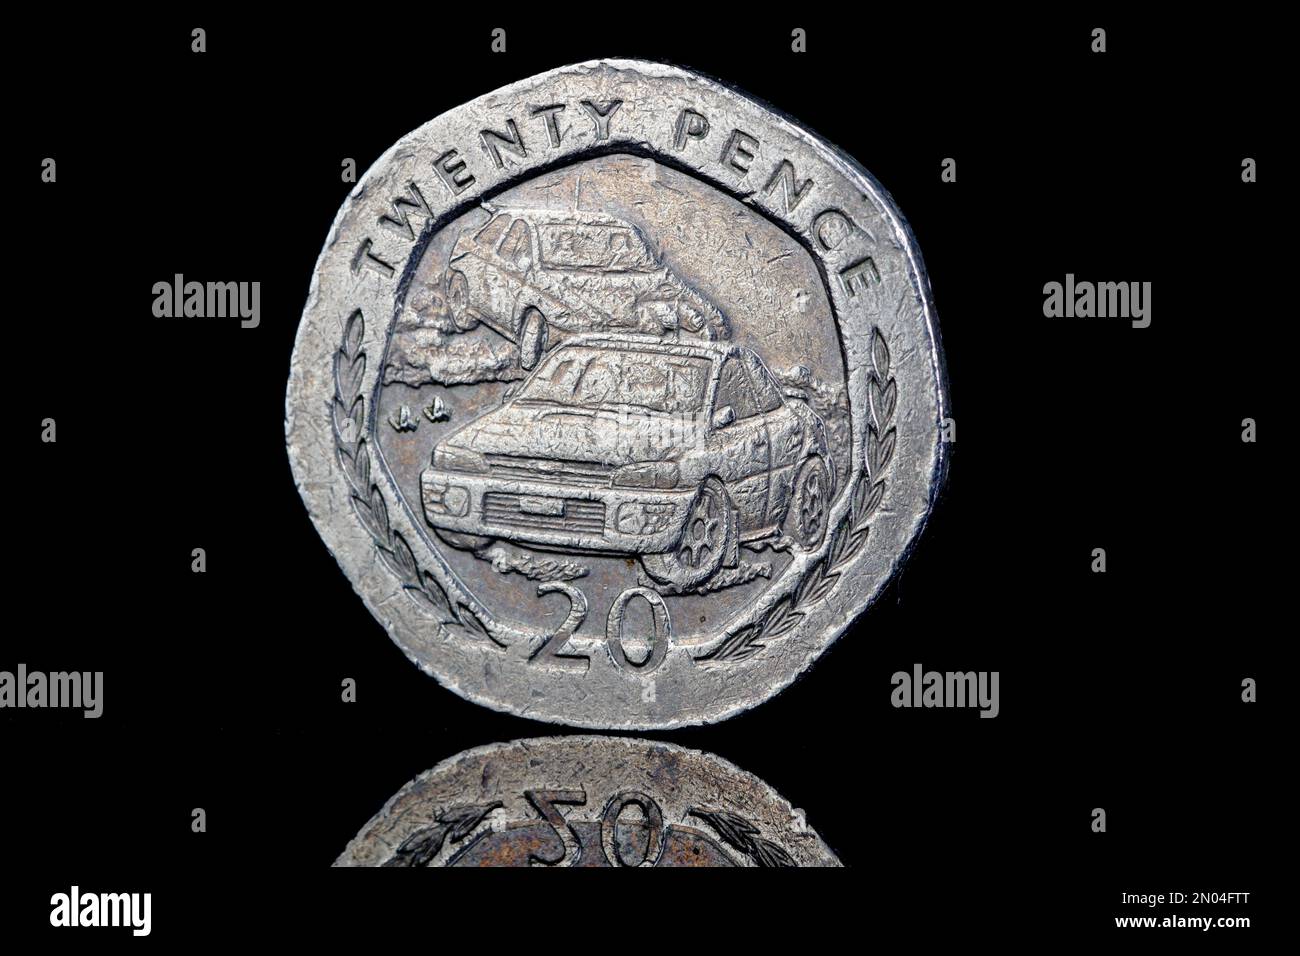 Lato opposto di una moneta da $20P dell'Isola di Man del 1997 che commemora il raduno automobilistico annuale delle isole Foto Stock